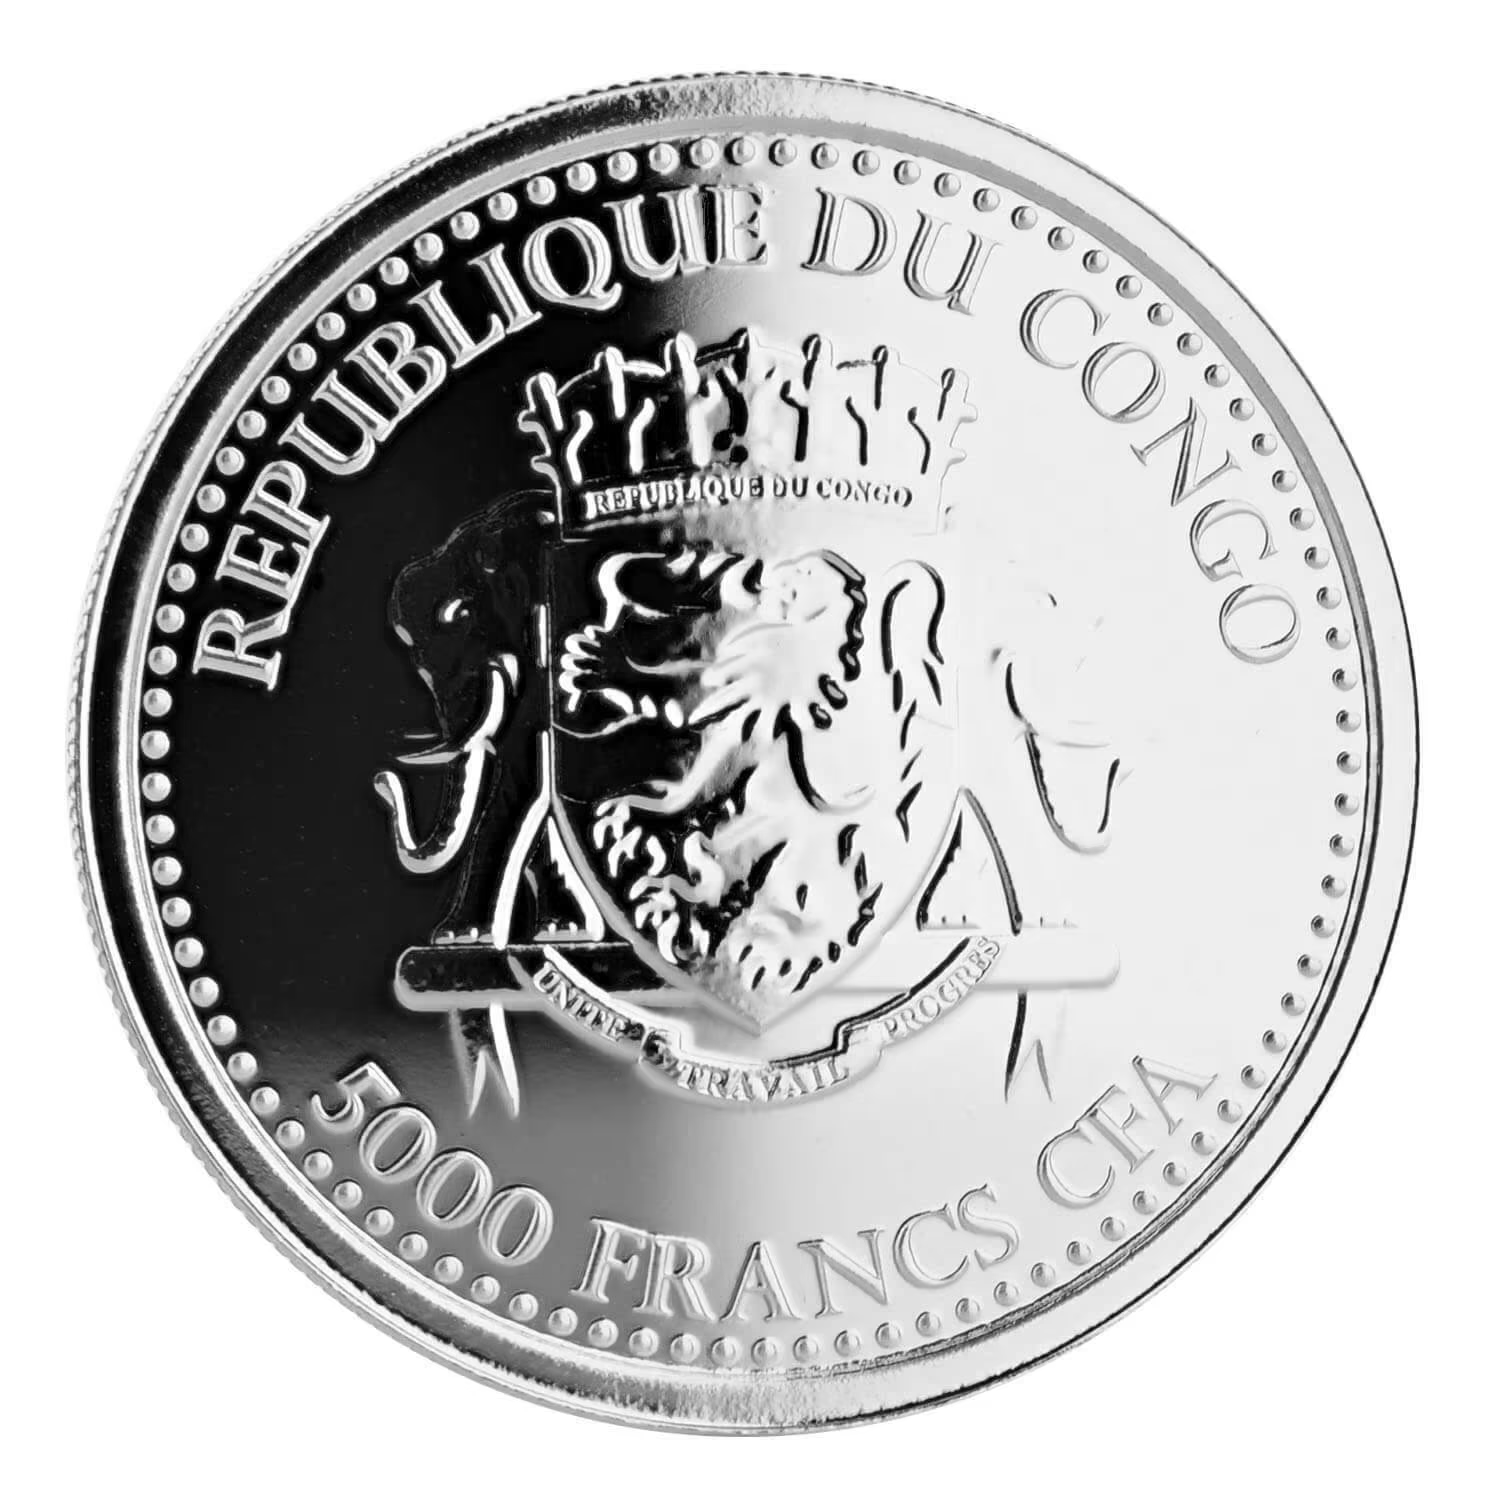 1 Oz Silver Coin 2016 5000 CFA Francs Congo Scottsdale Color Silverback Gorilla-classypw.com-2